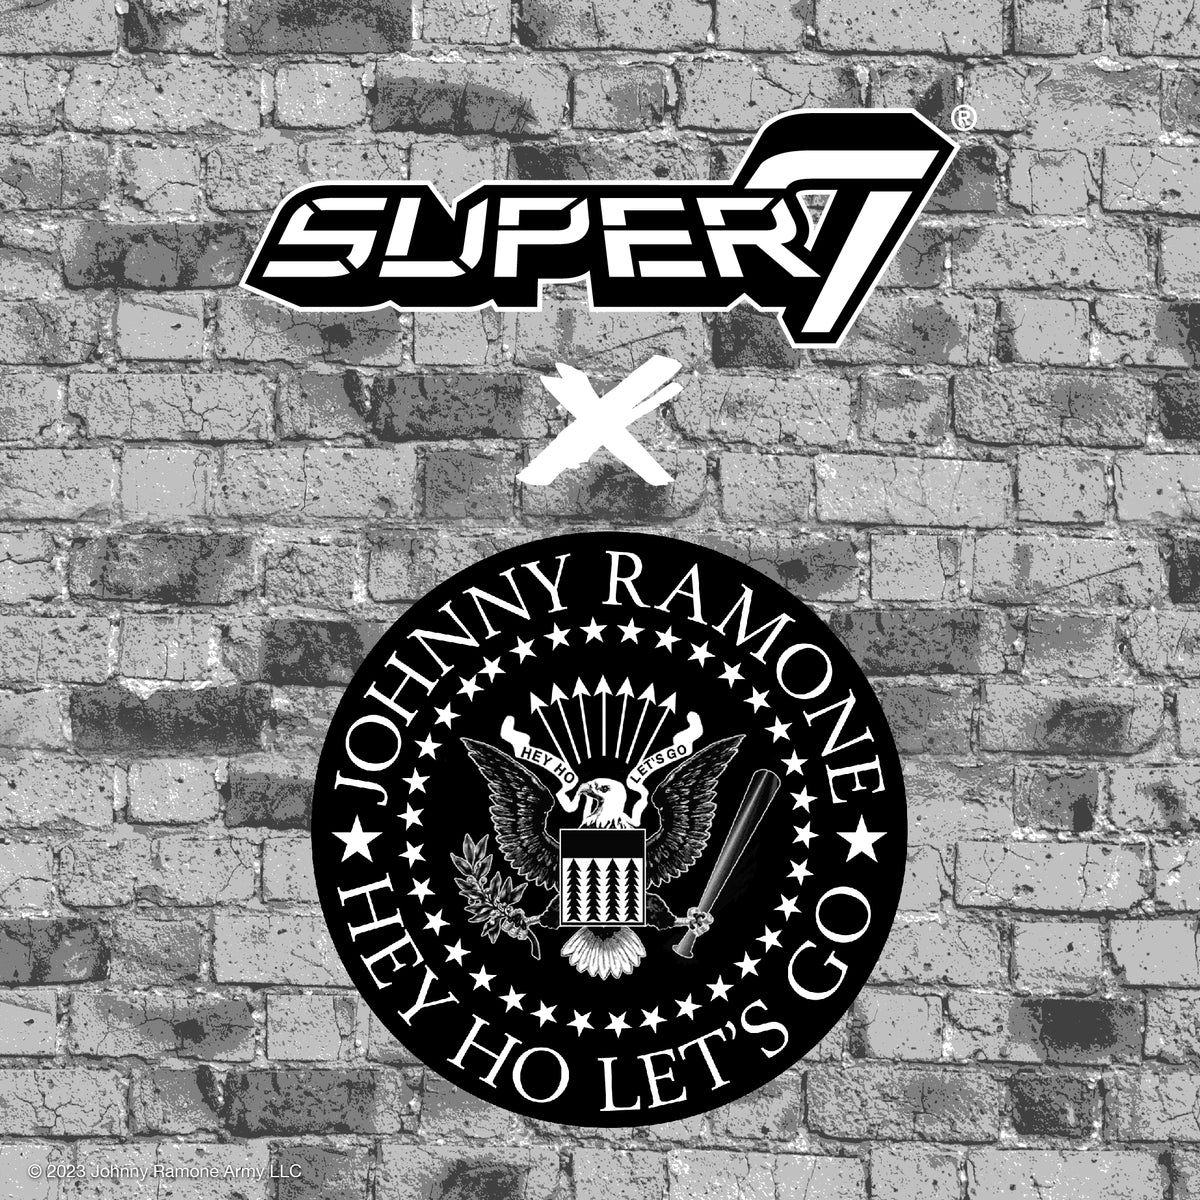 Super7 ReAction: Ramones - Johnny Ramone